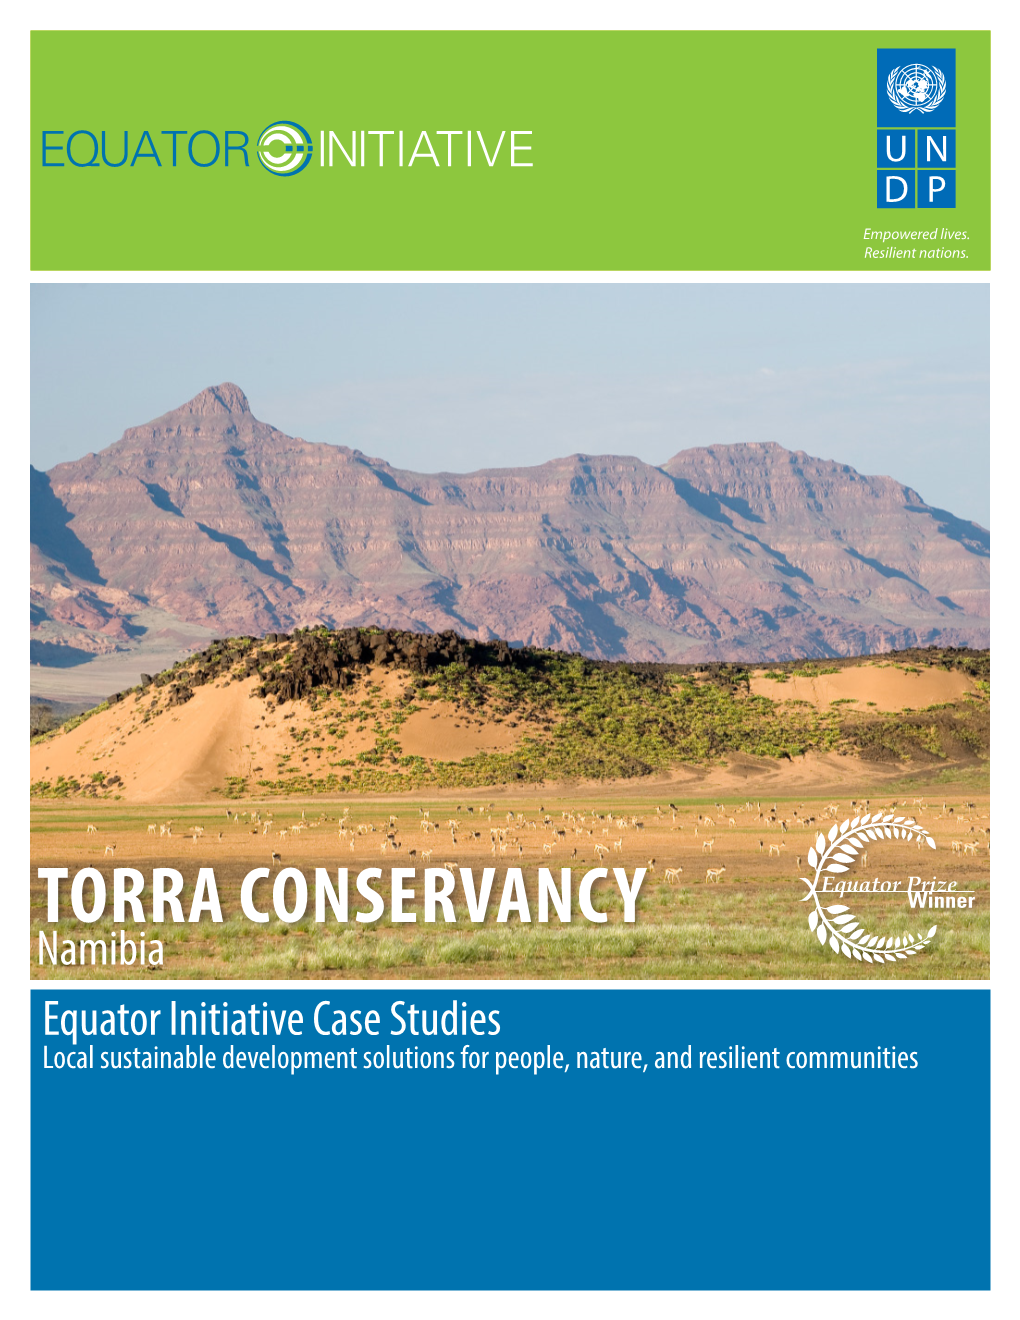 Torra Conservancy